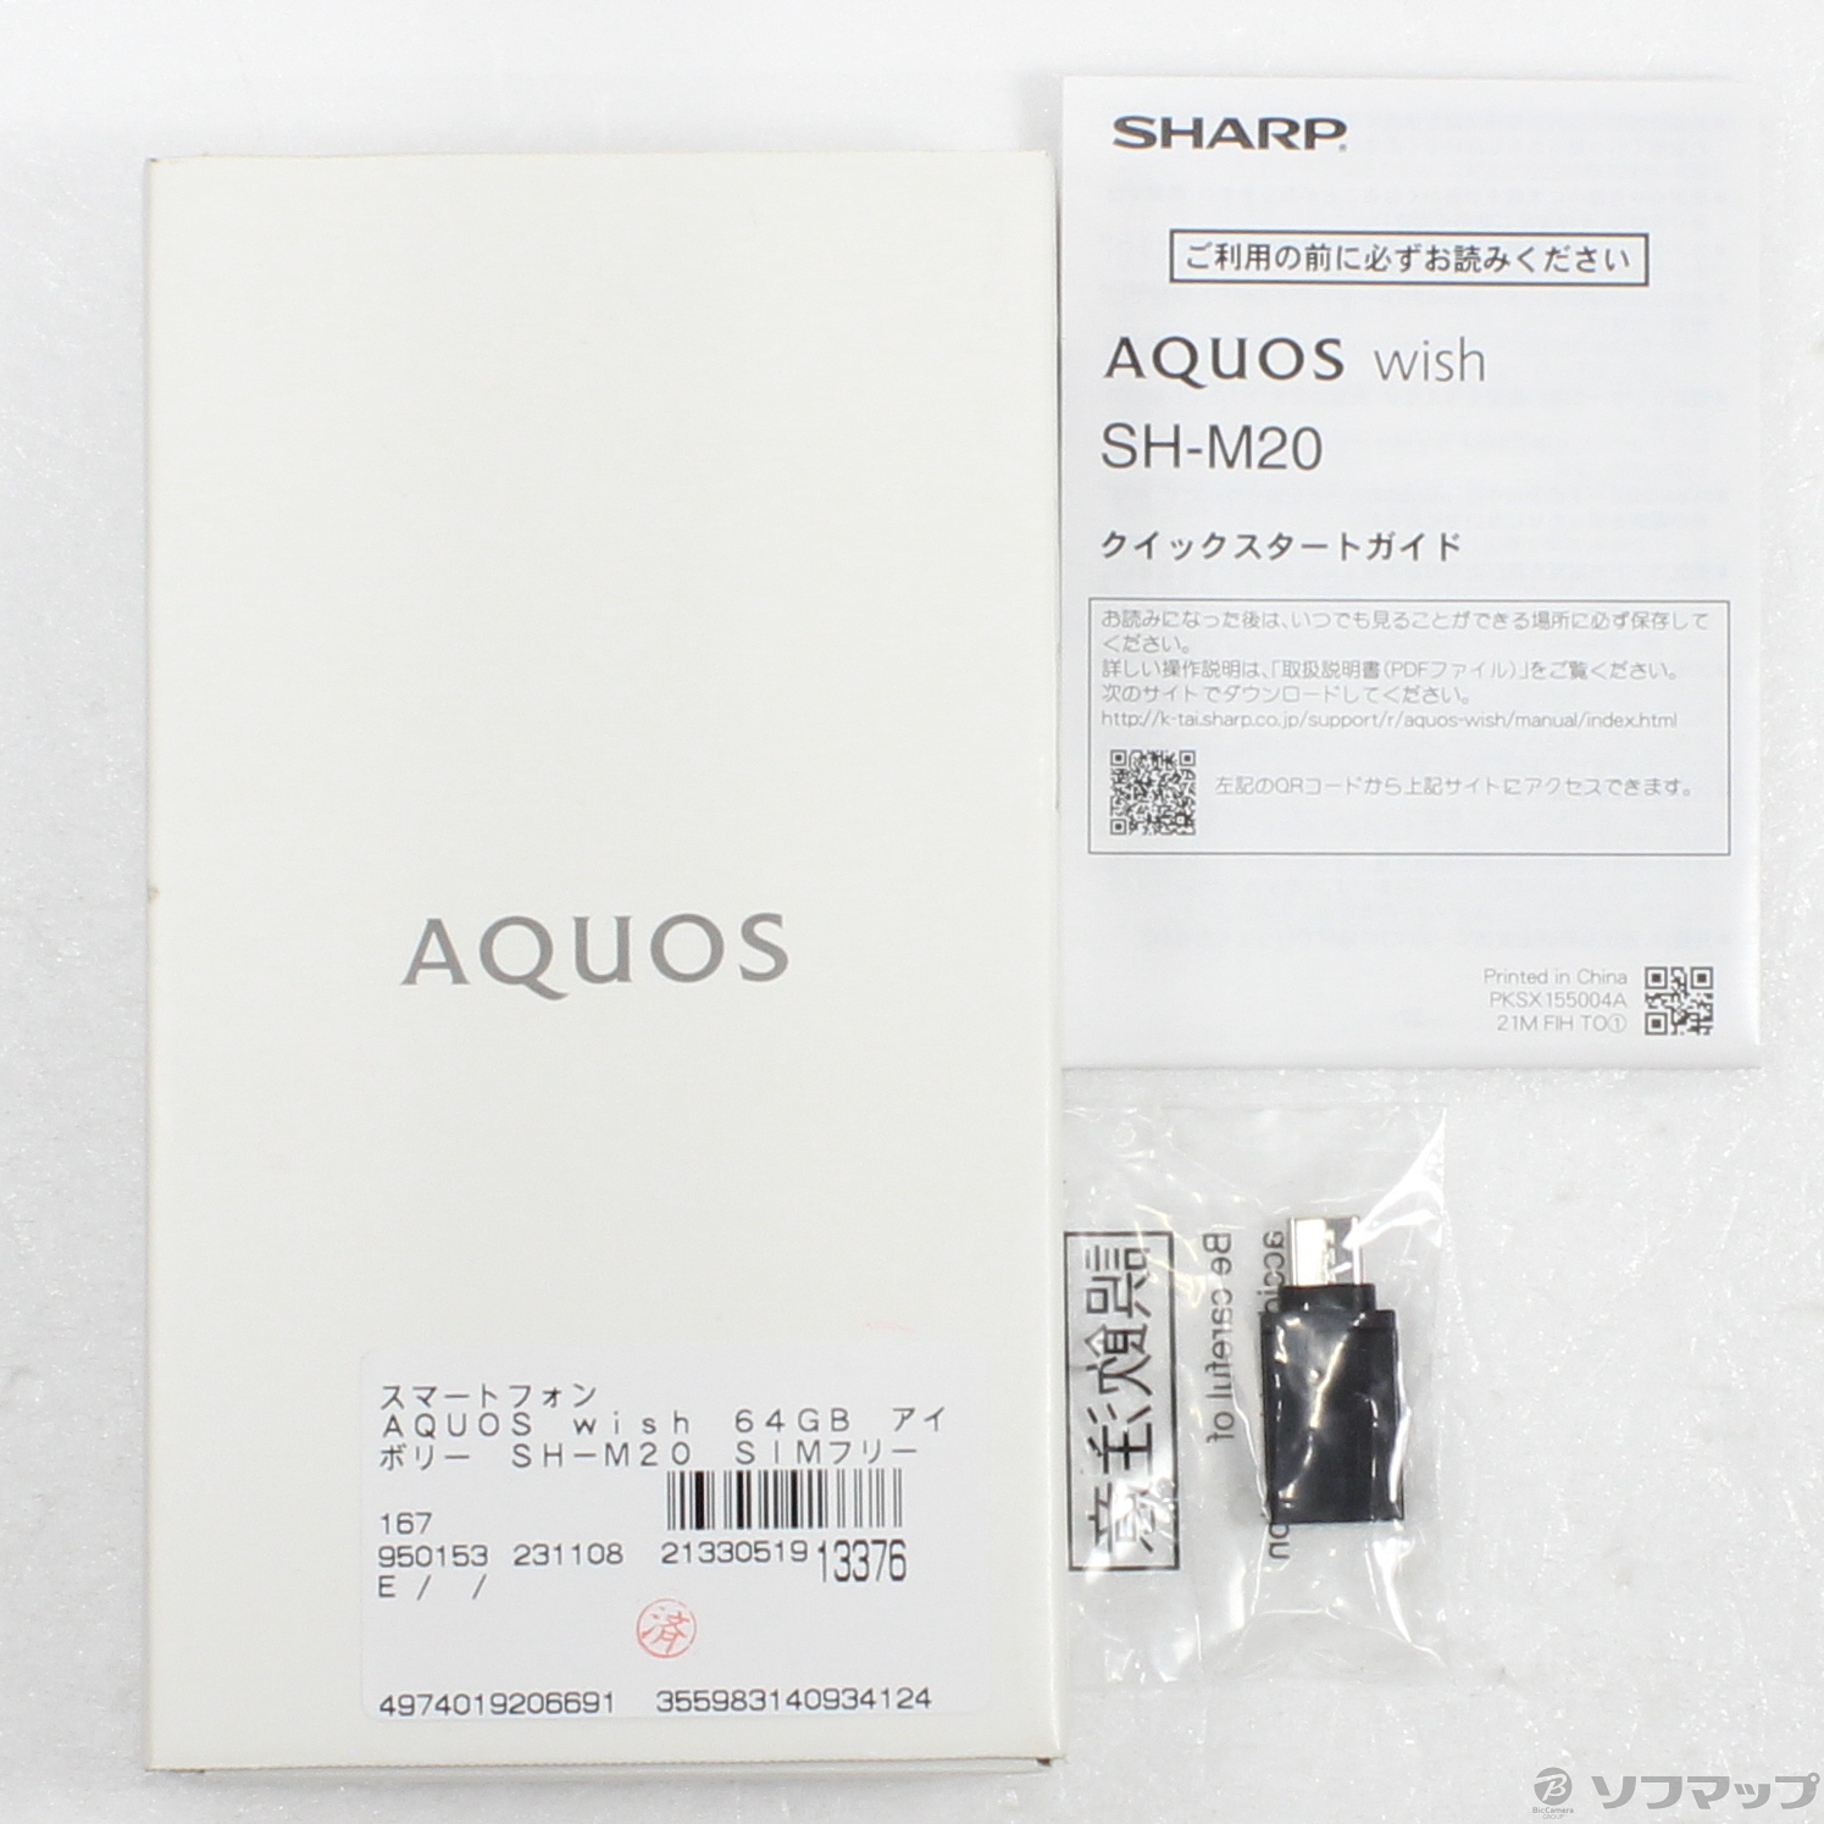 中古】AQUOS wish 64GB アイボリー SH-M20 SIMフリー [2133051913376